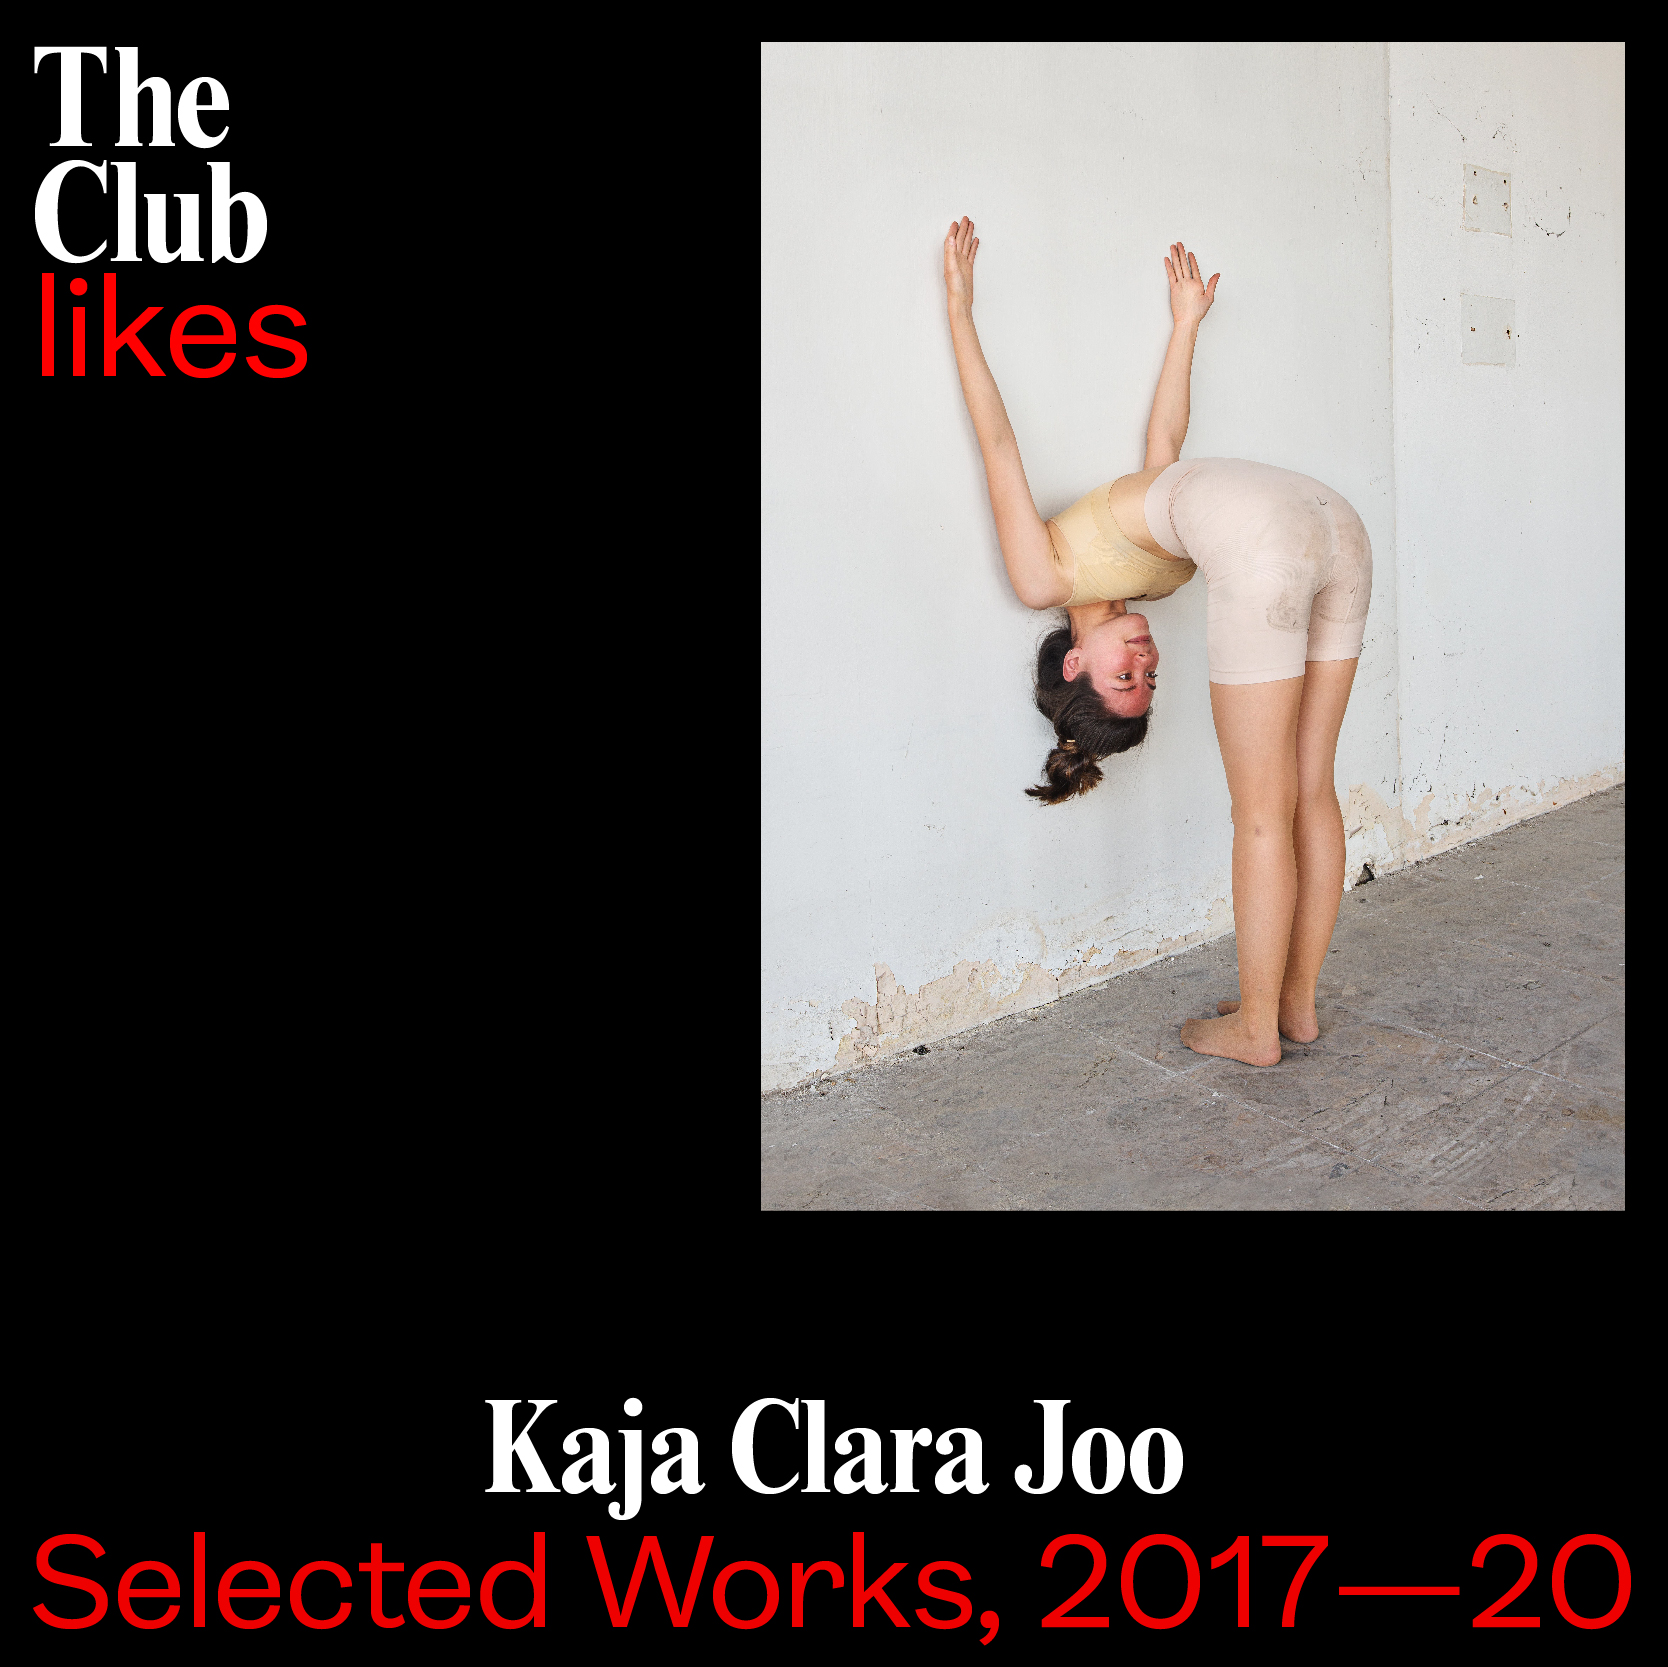 The club likes… Kaja Clara Joo